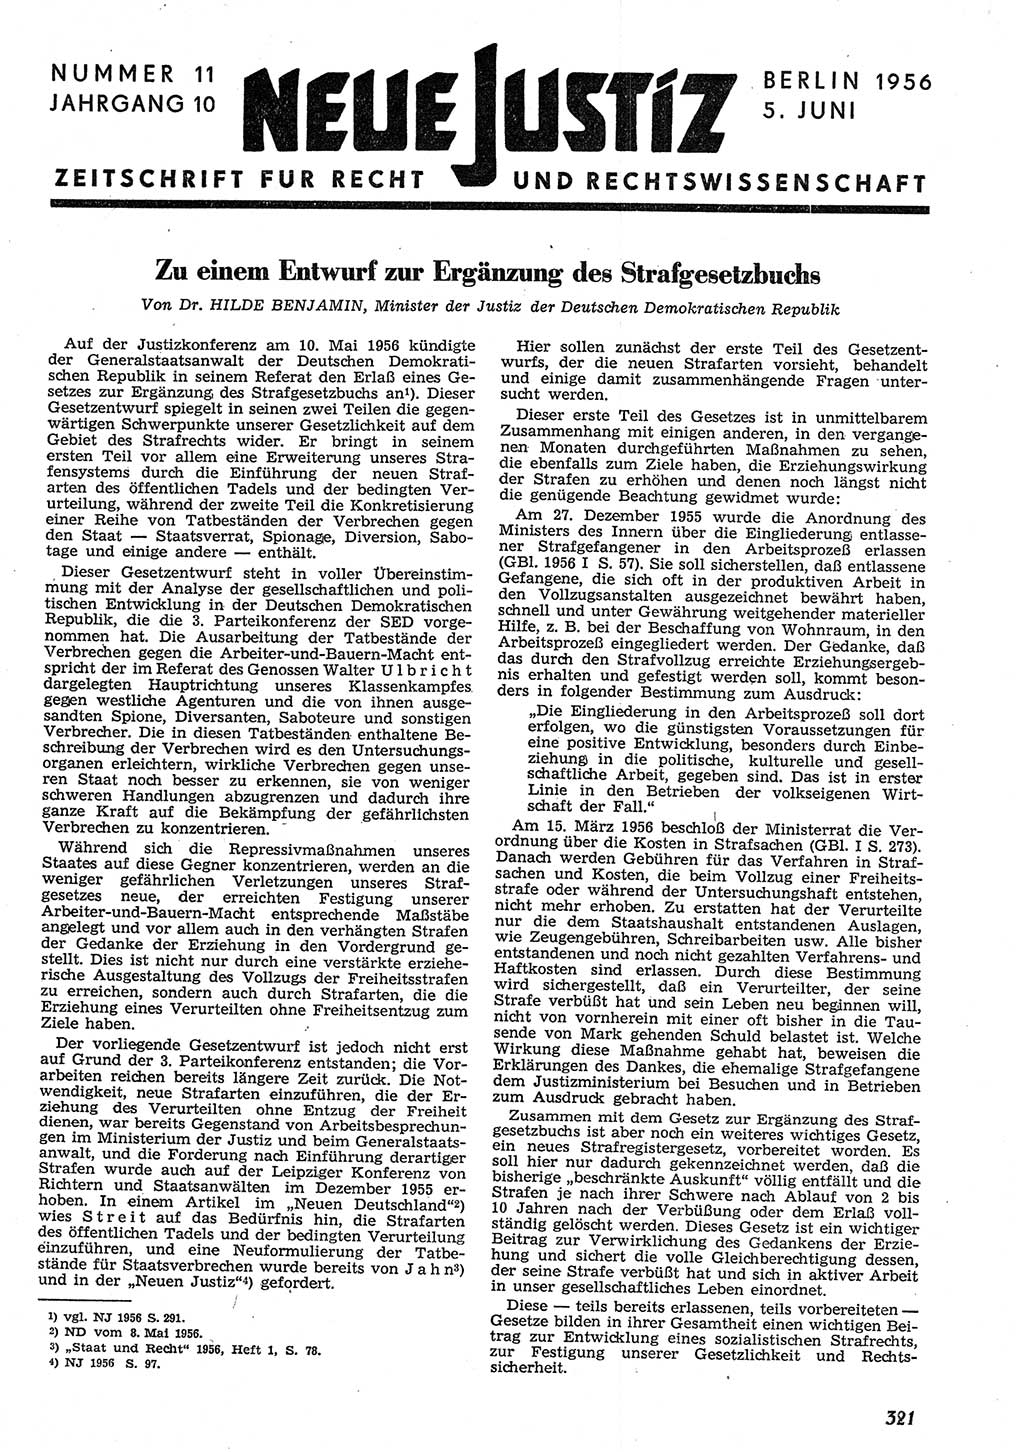 Neue Justiz (NJ), Zeitschrift für Recht und Rechtswissenschaft [Deutsche Demokratische Republik (DDR)], 10. Jahrgang 1956, Seite 321 (NJ DDR 1956, S. 321)